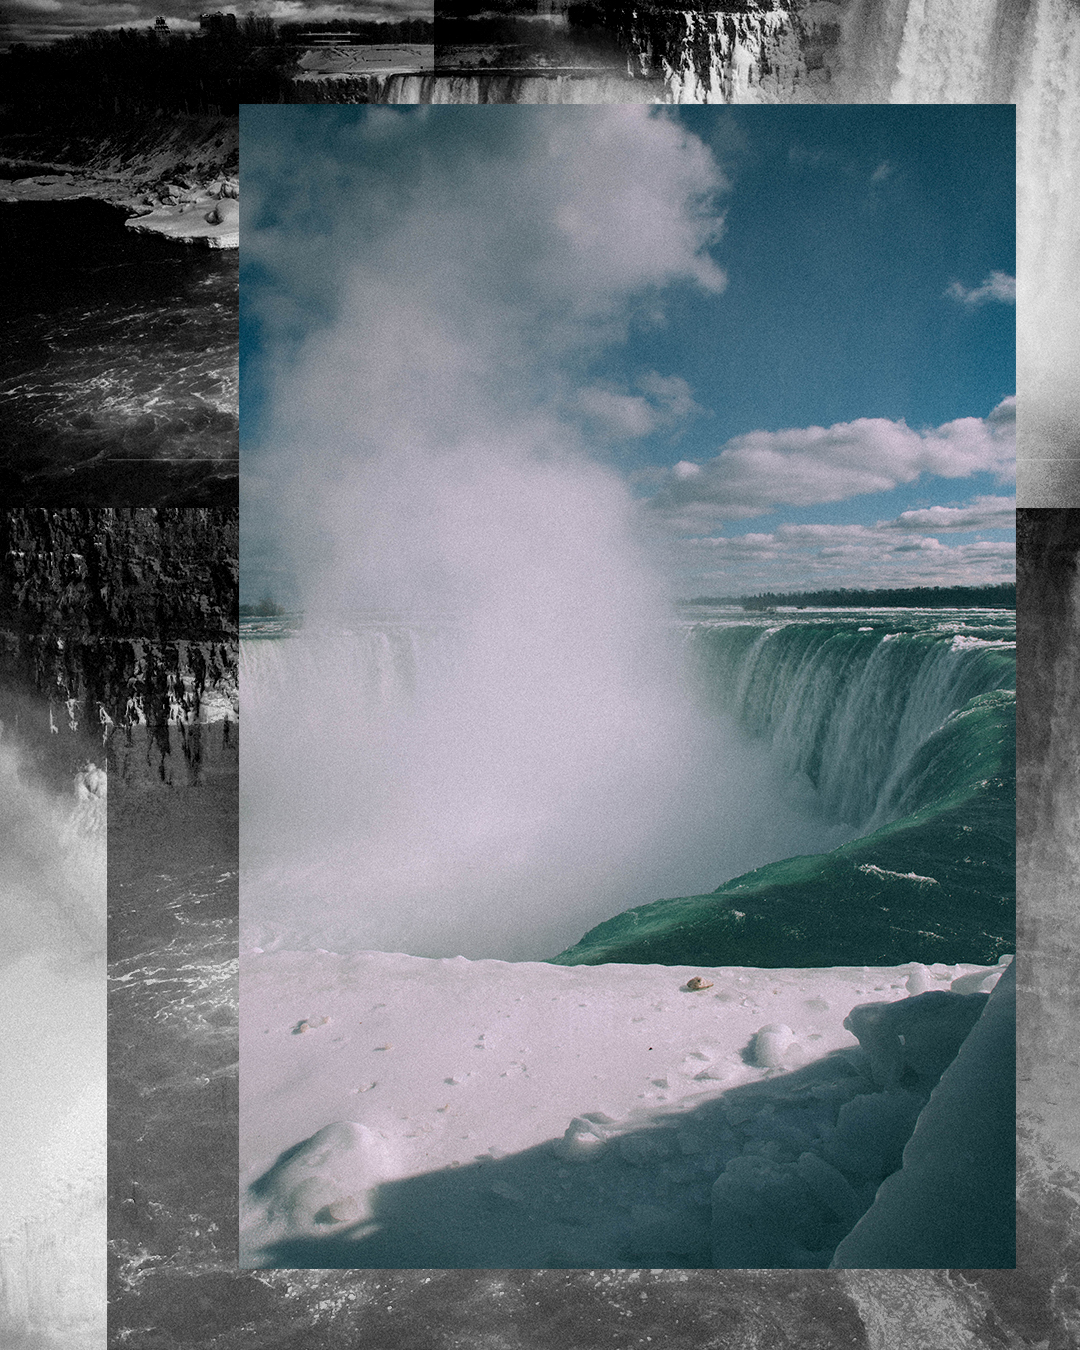 NiagaraFalls.jpg